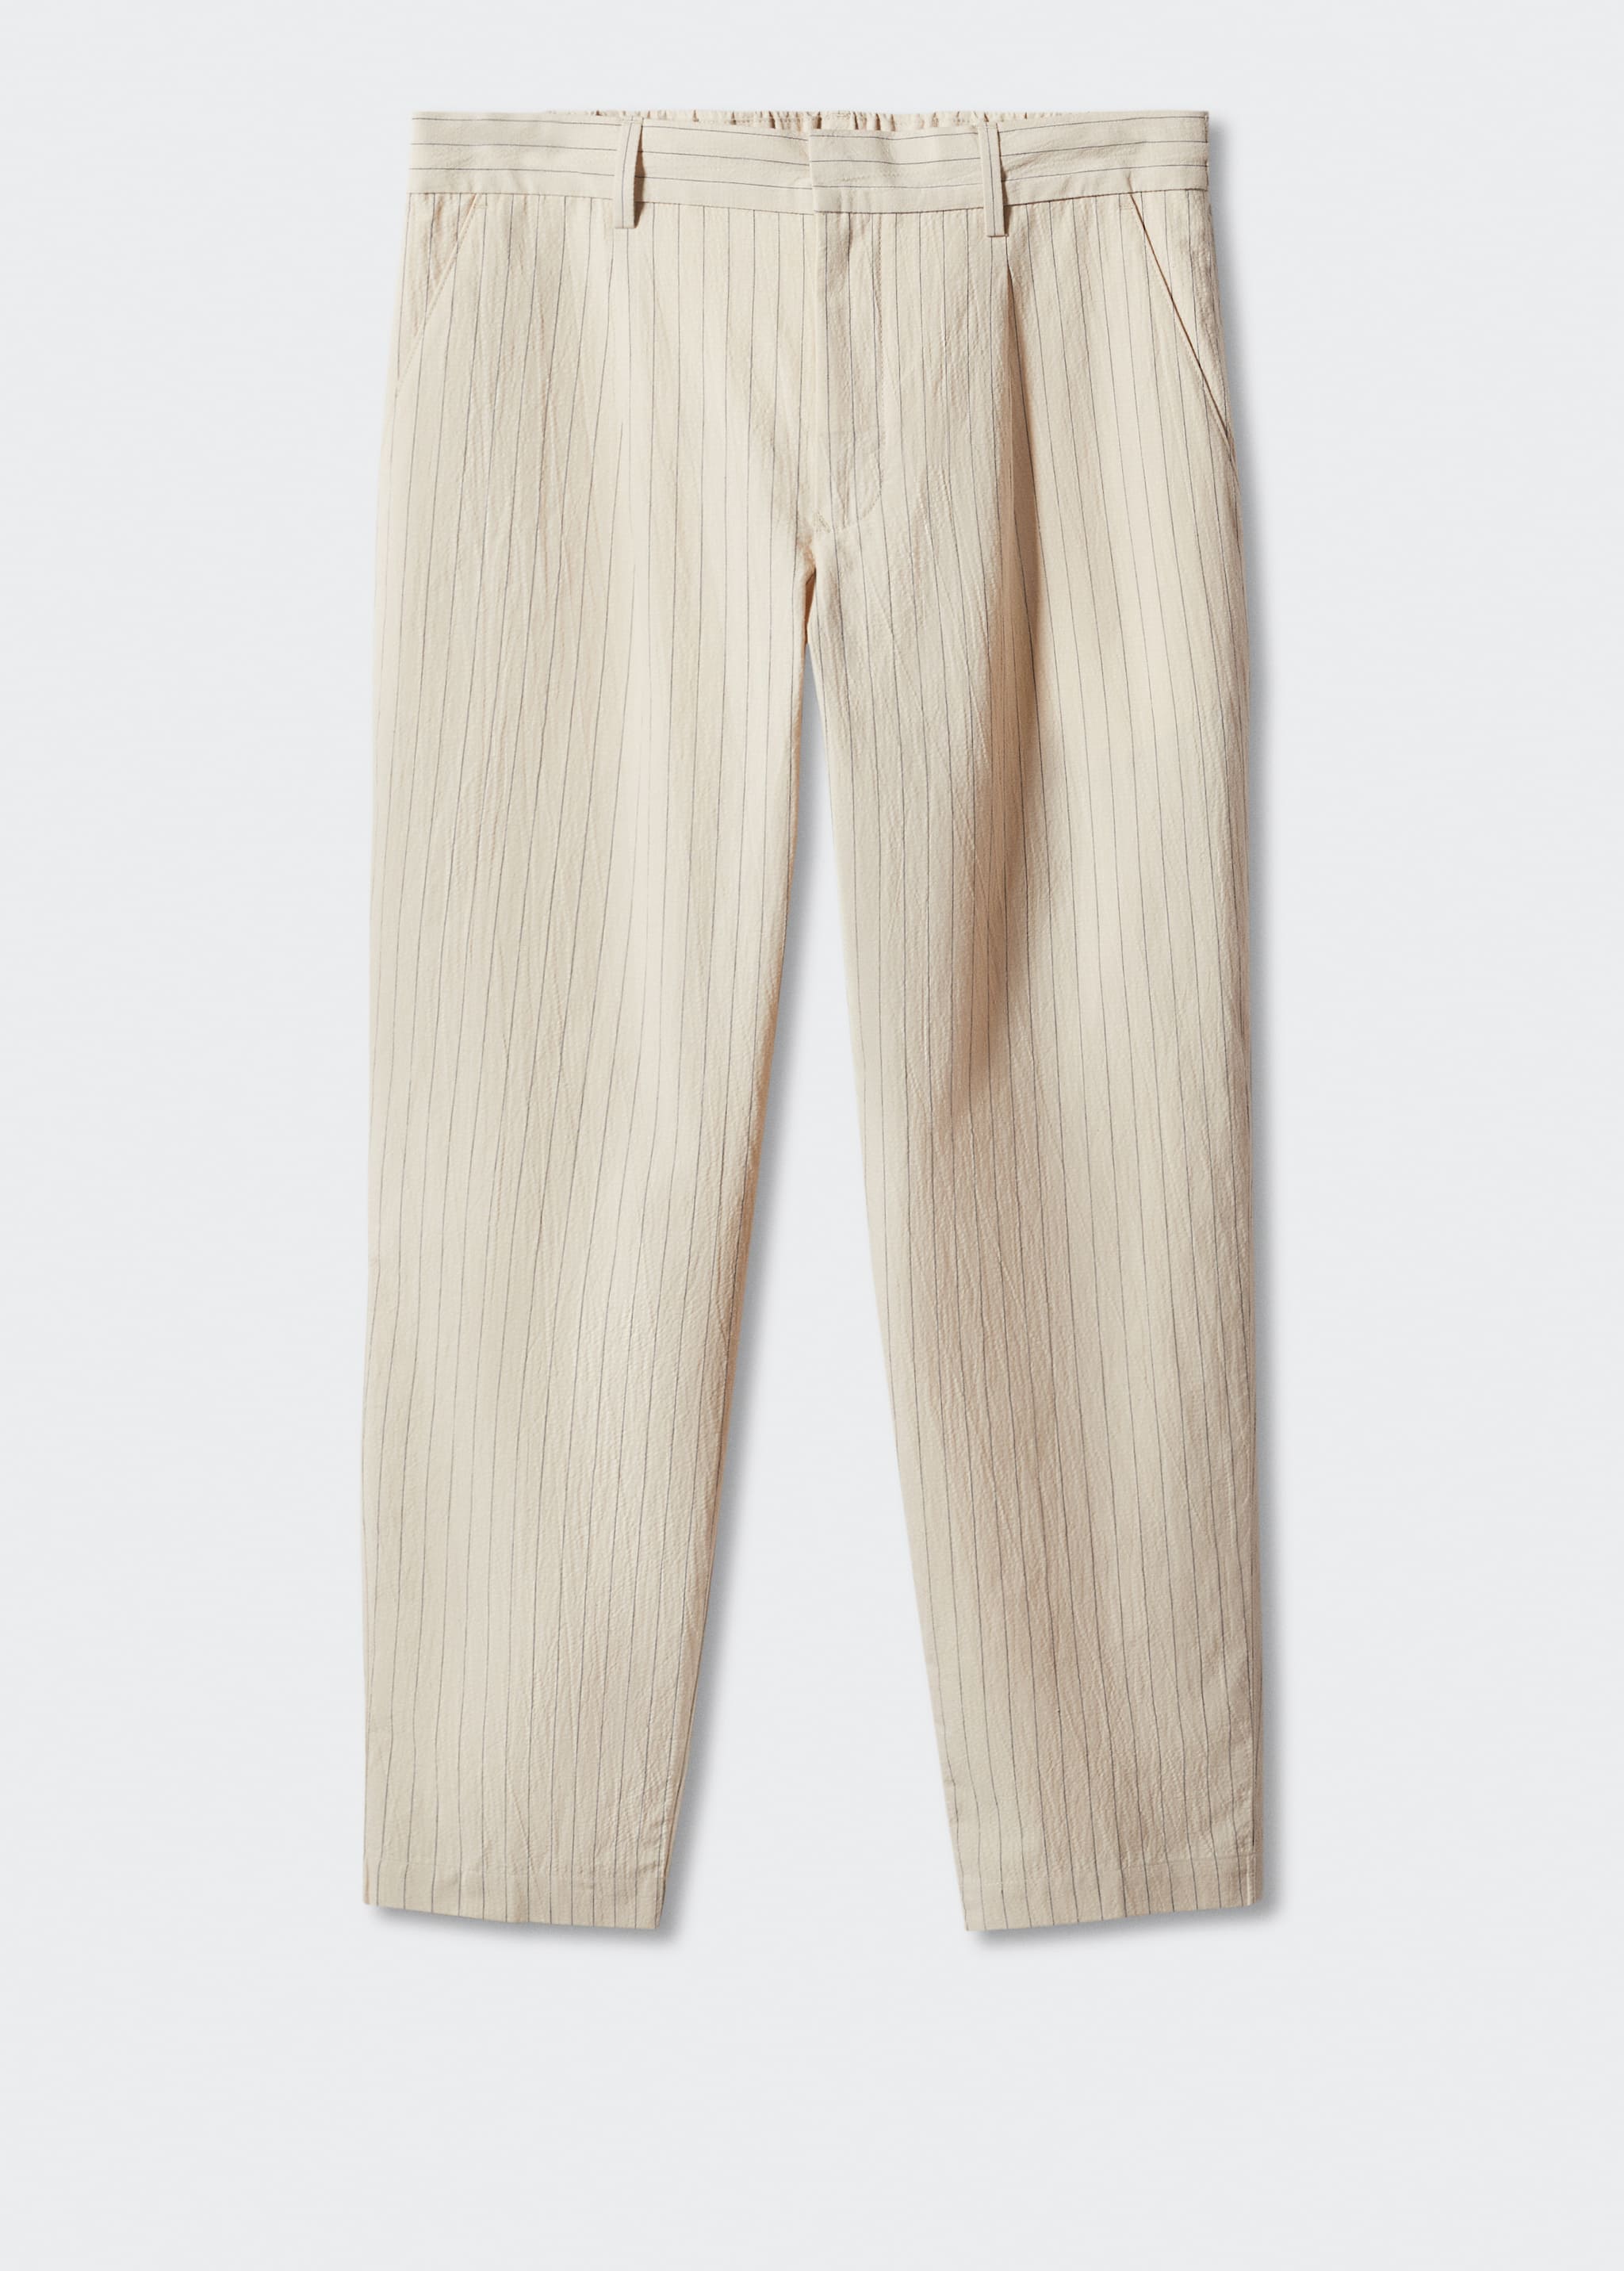 Pantalón algodón-lino seersucker - Artículo sin modelo